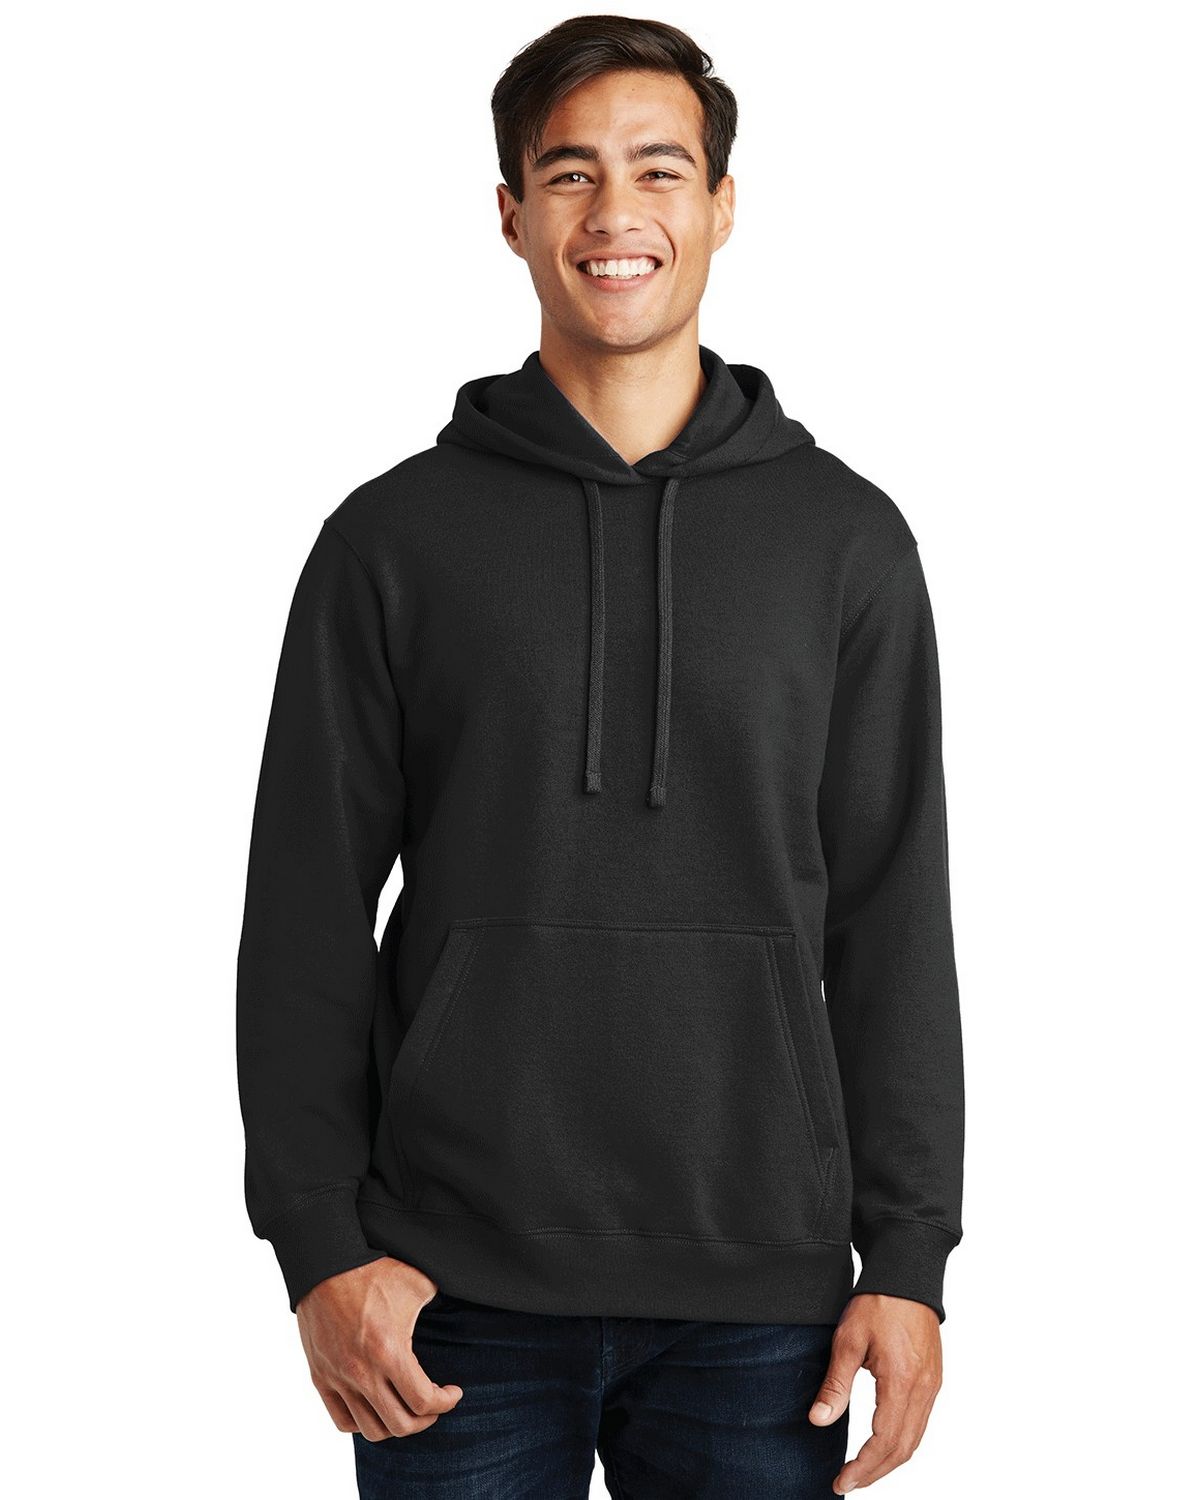 Port & Company PC850H Fan Favorite Fleece Pullover Hooded Sweatshirt